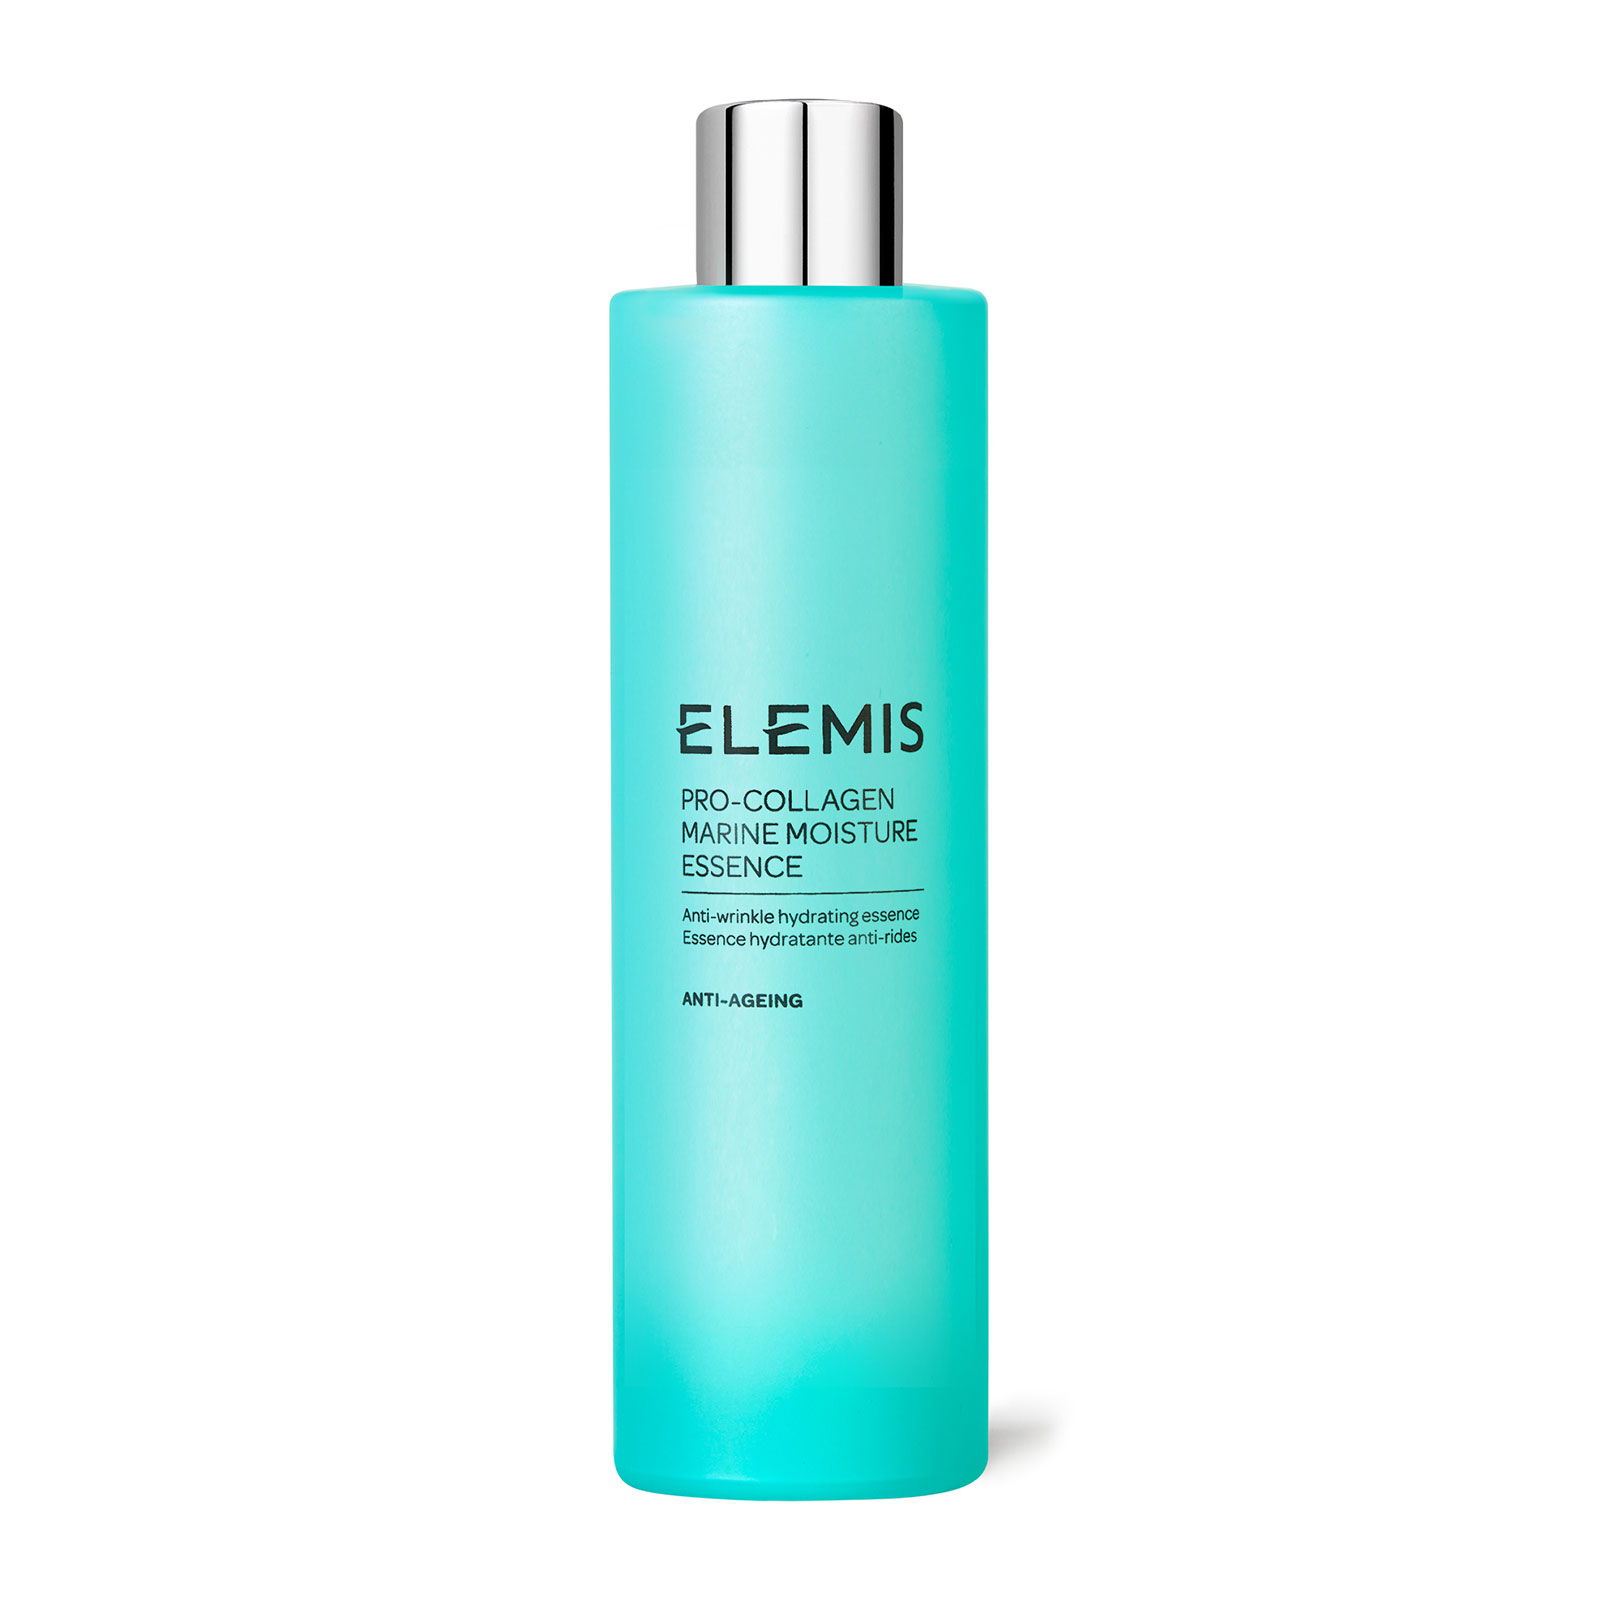 ELEMIS Pro-Collagen Marine Moisture Essence Supersize 200ml